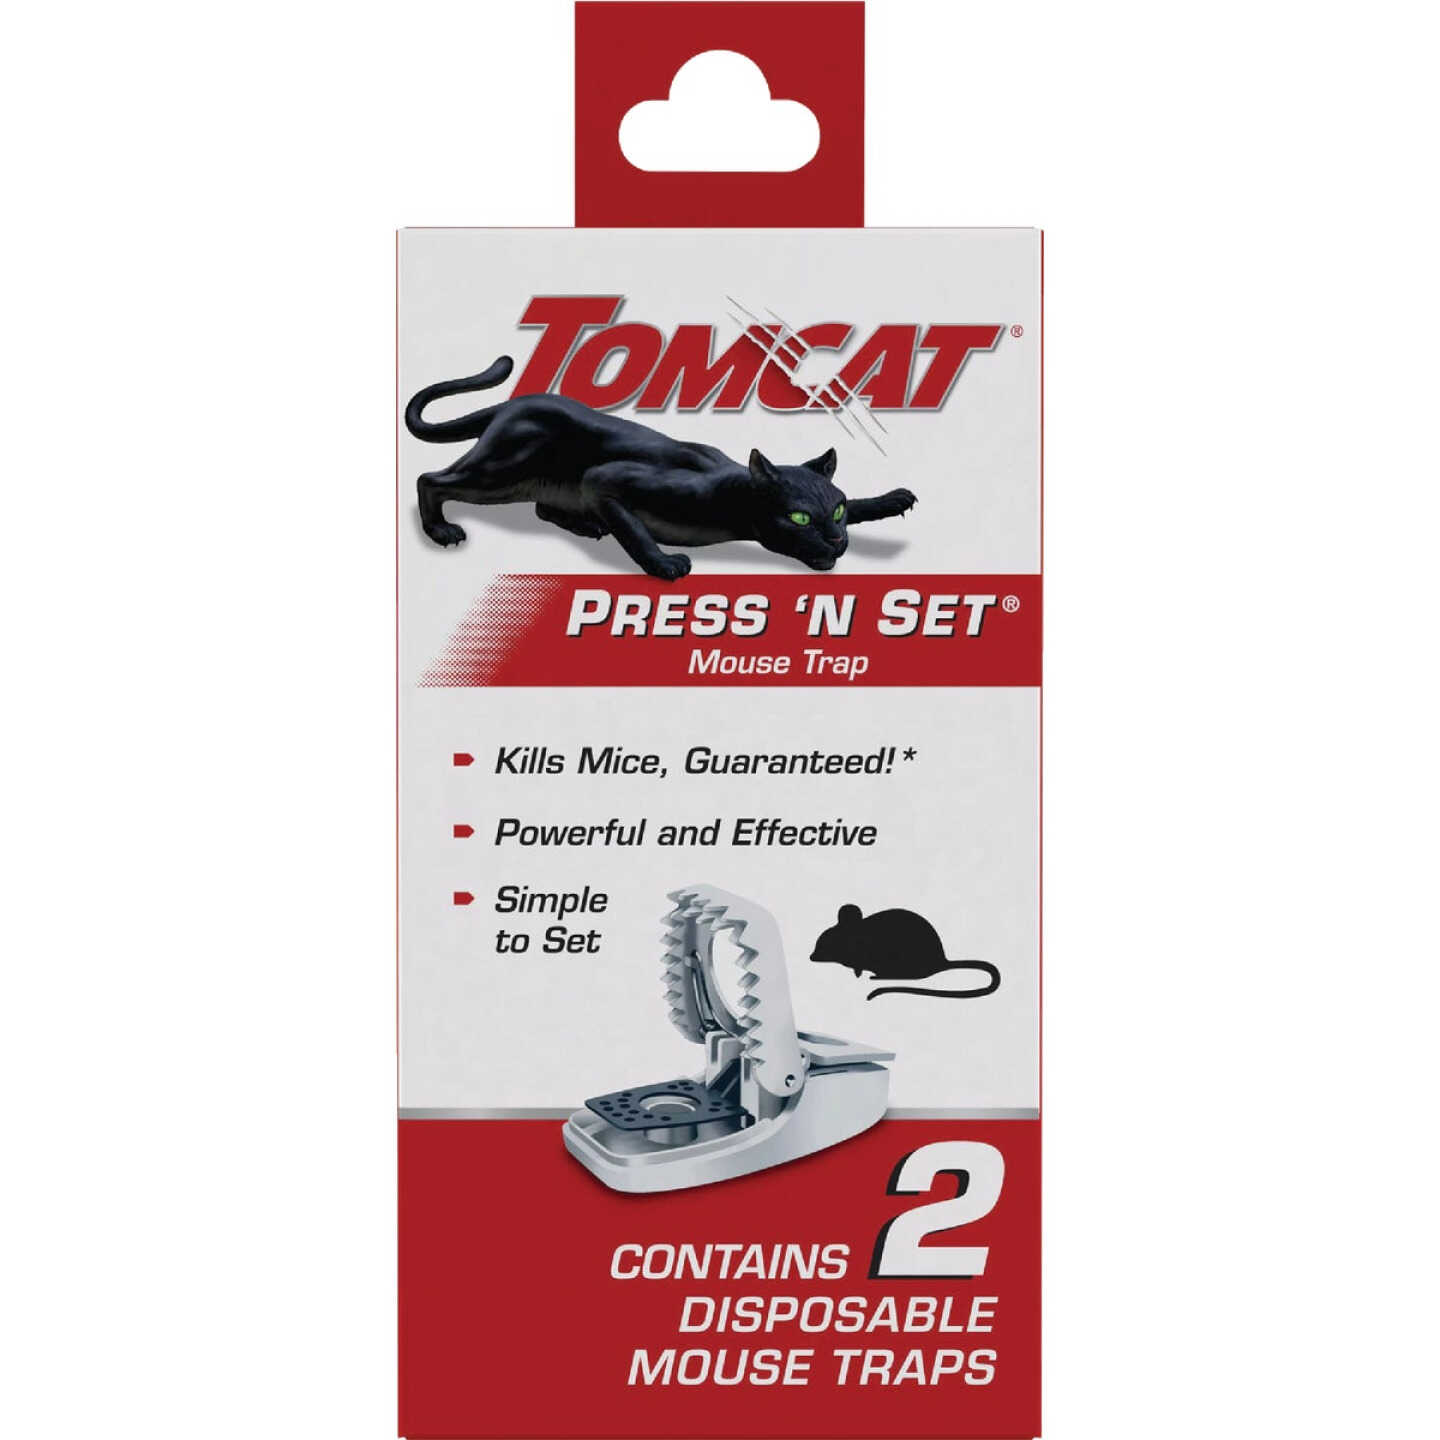 Tomcat Attractant Gel - 1 fl oz